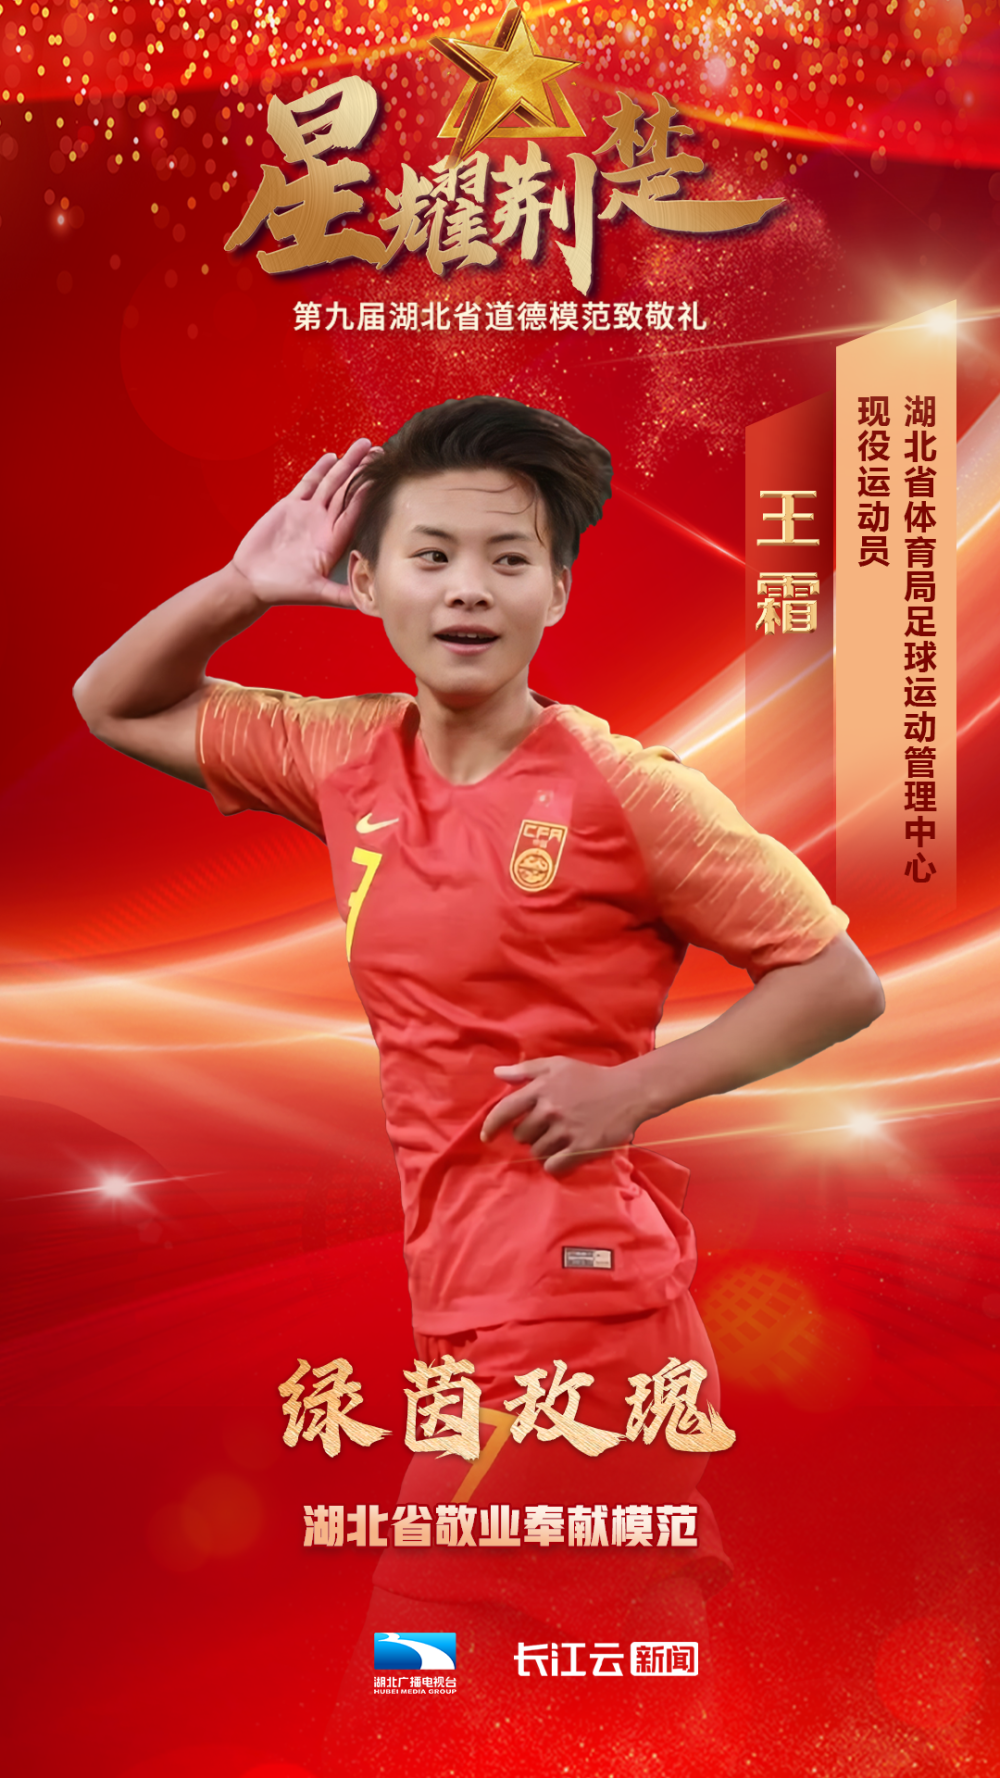 相信她的这股“劲”会为中国女足带来更多优异表现